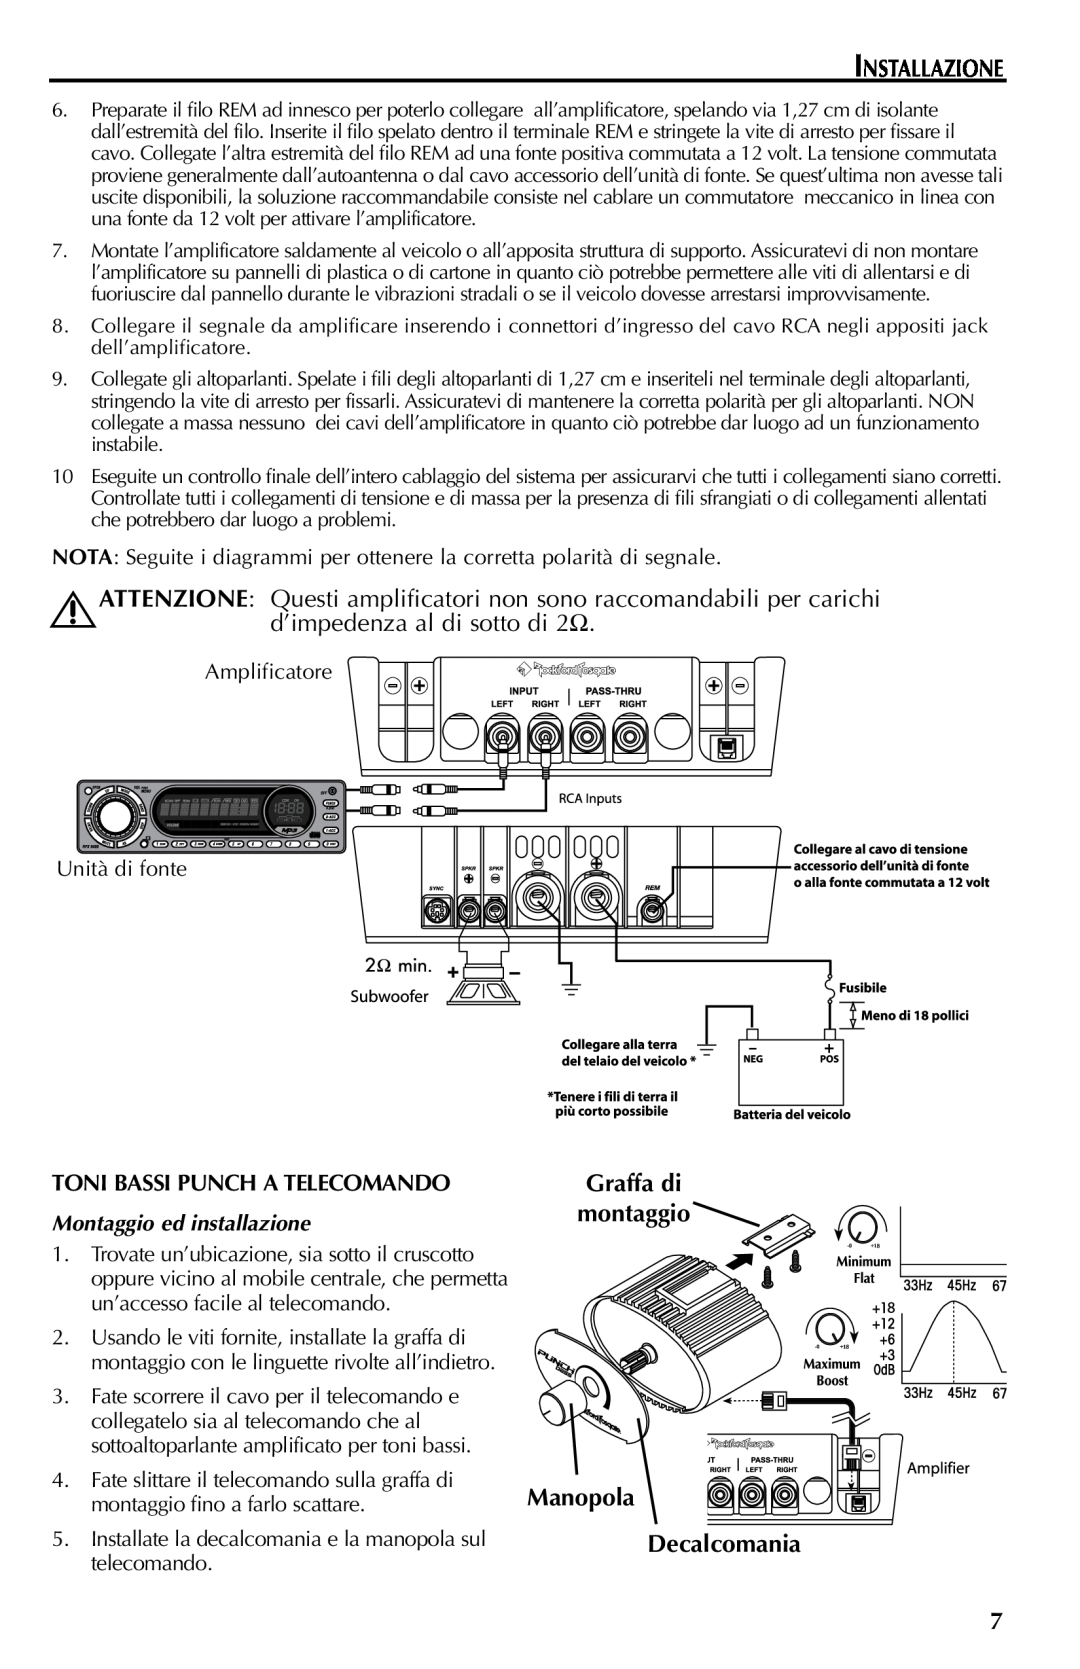 Rockford Fosgate FFX6 manual Installazione, d’impedenza al di sotto di, Manopola Decalcomania, Montaggio ed installazione 